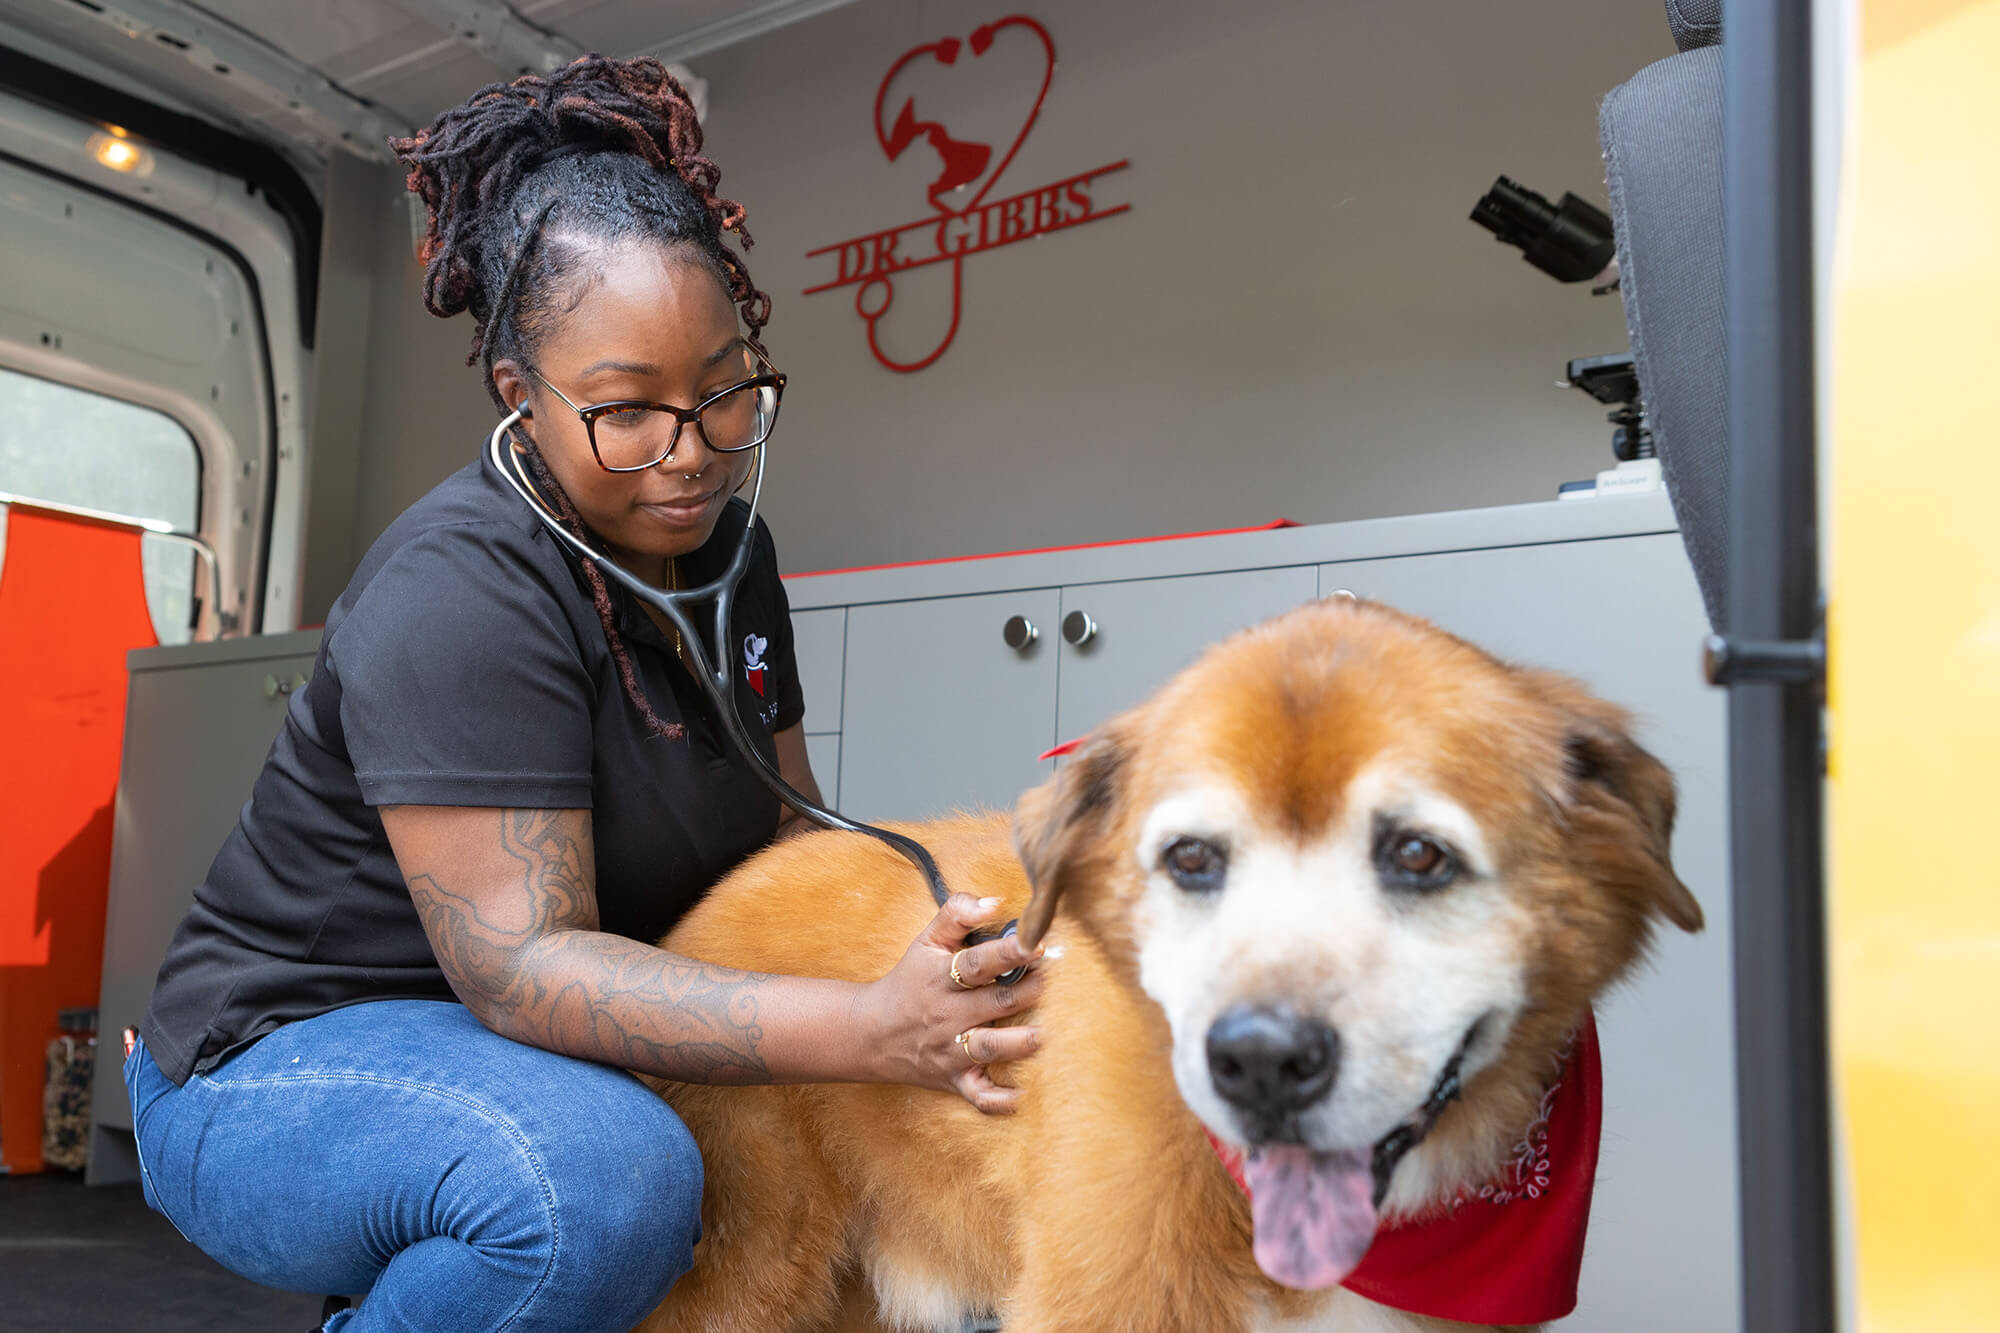 Dr. Jasmine Gibbs checks on her dog Spike's vitals inside her mobile vet clinic